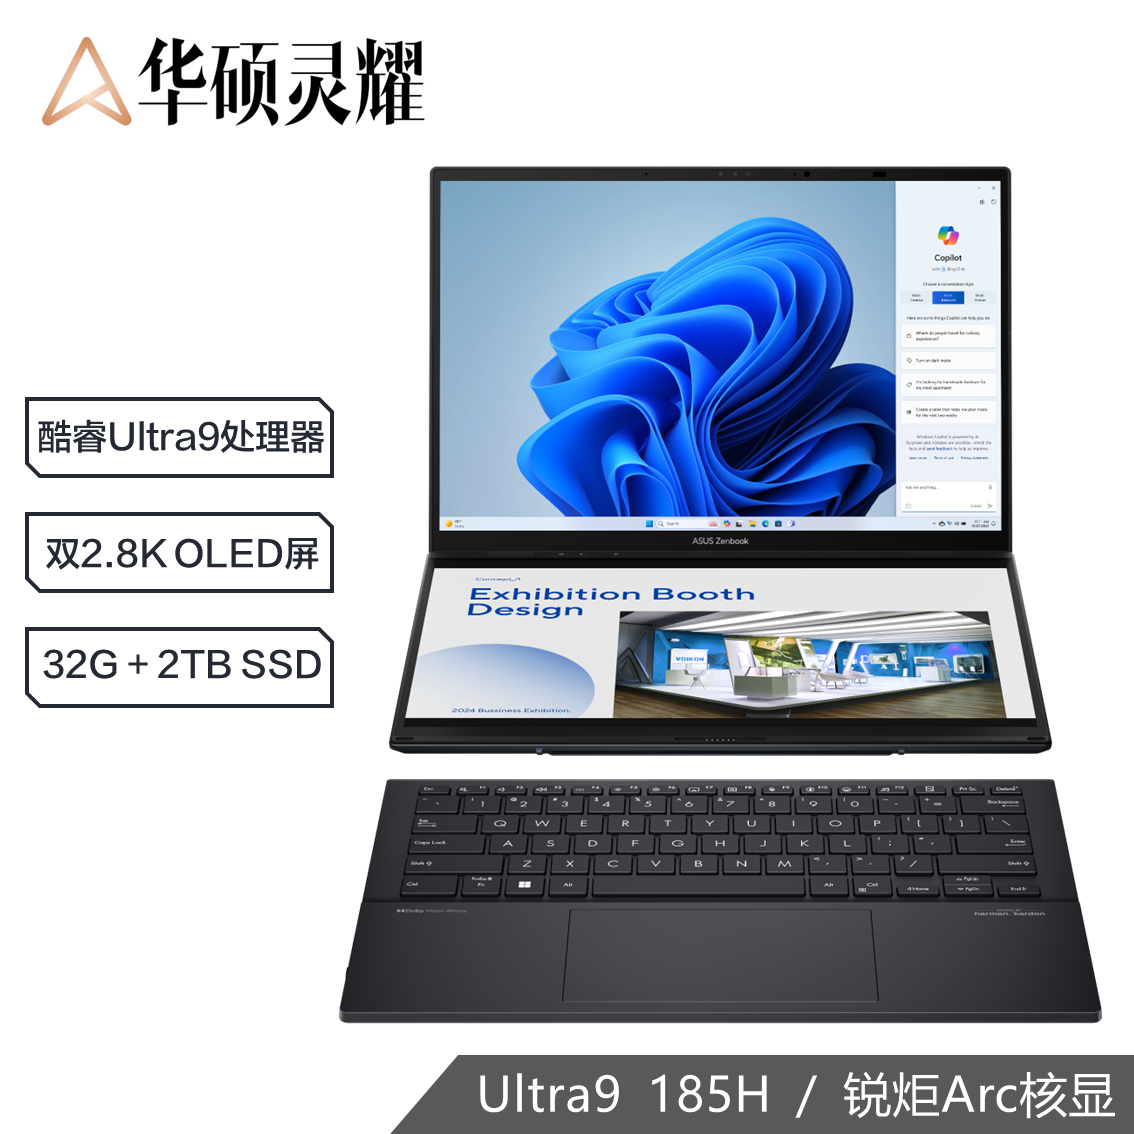 灵耀14 双屏 全新酷睿标压Ultra9 双屏高性能轻薄笔记本电脑（U9-185H/32G/2T SSD/2.8K OLED）科技黑